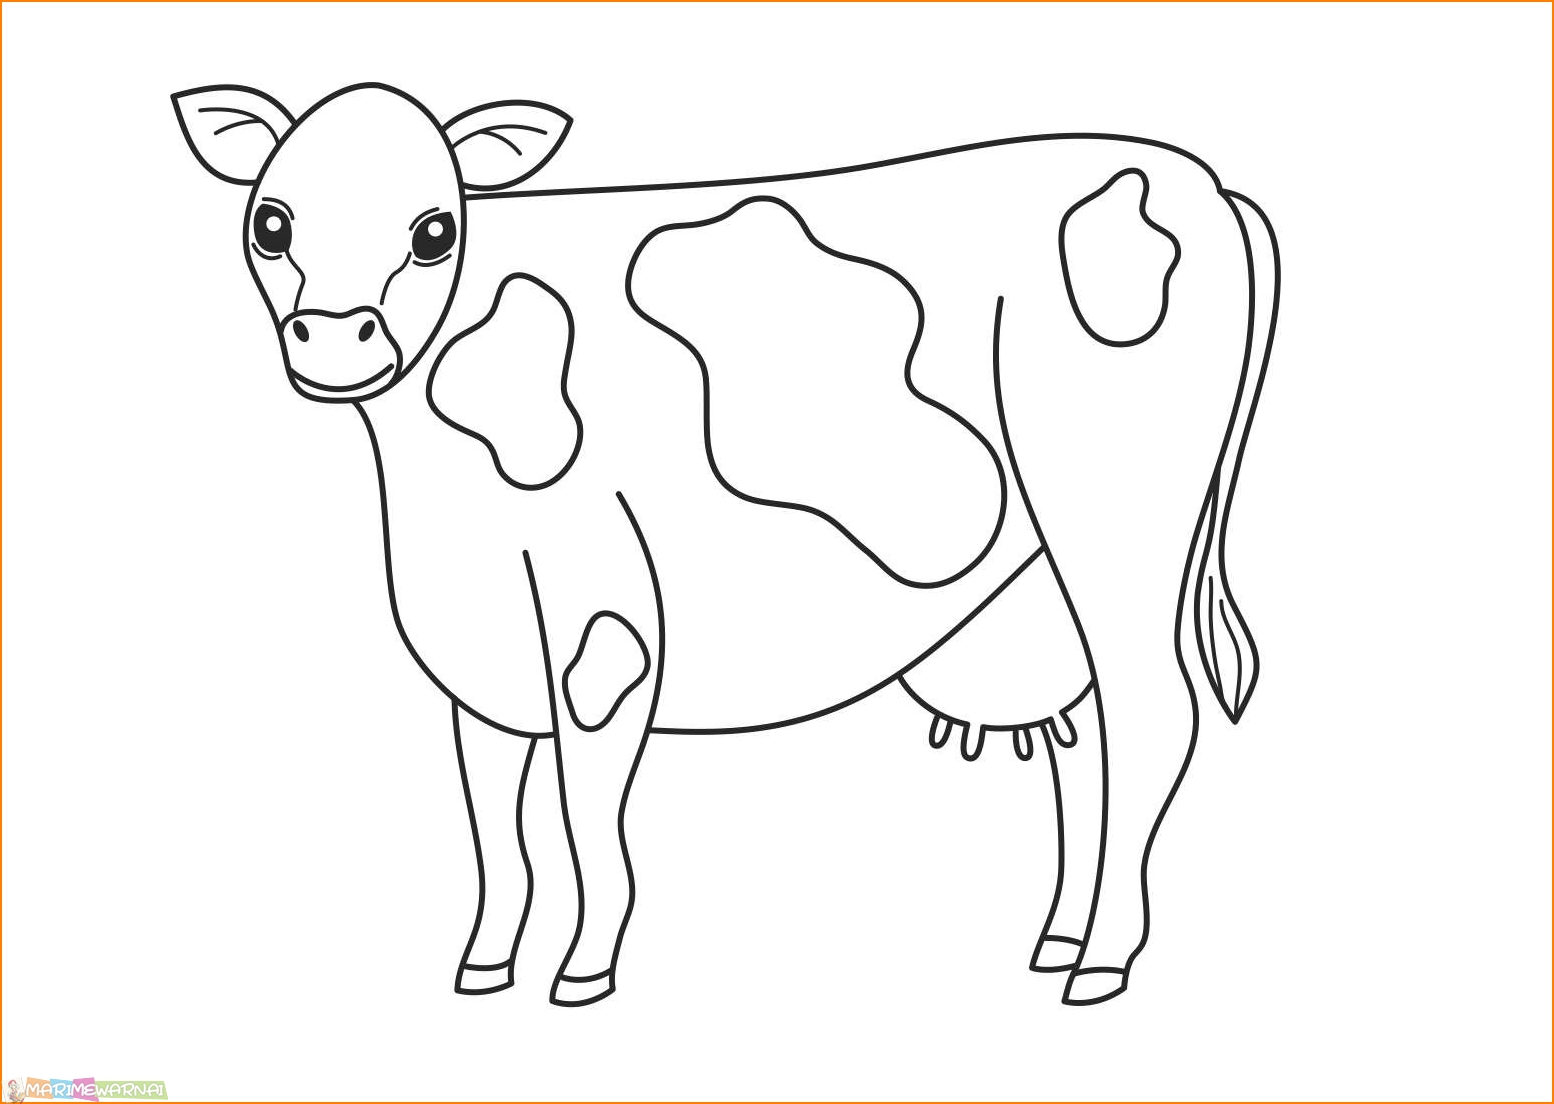 Раскрашивать коров. Раскраска корова. Корова раскраска для детей. Раскраски для малышей домашние животные. Картинки для раскрашивания домашние животные для детей.